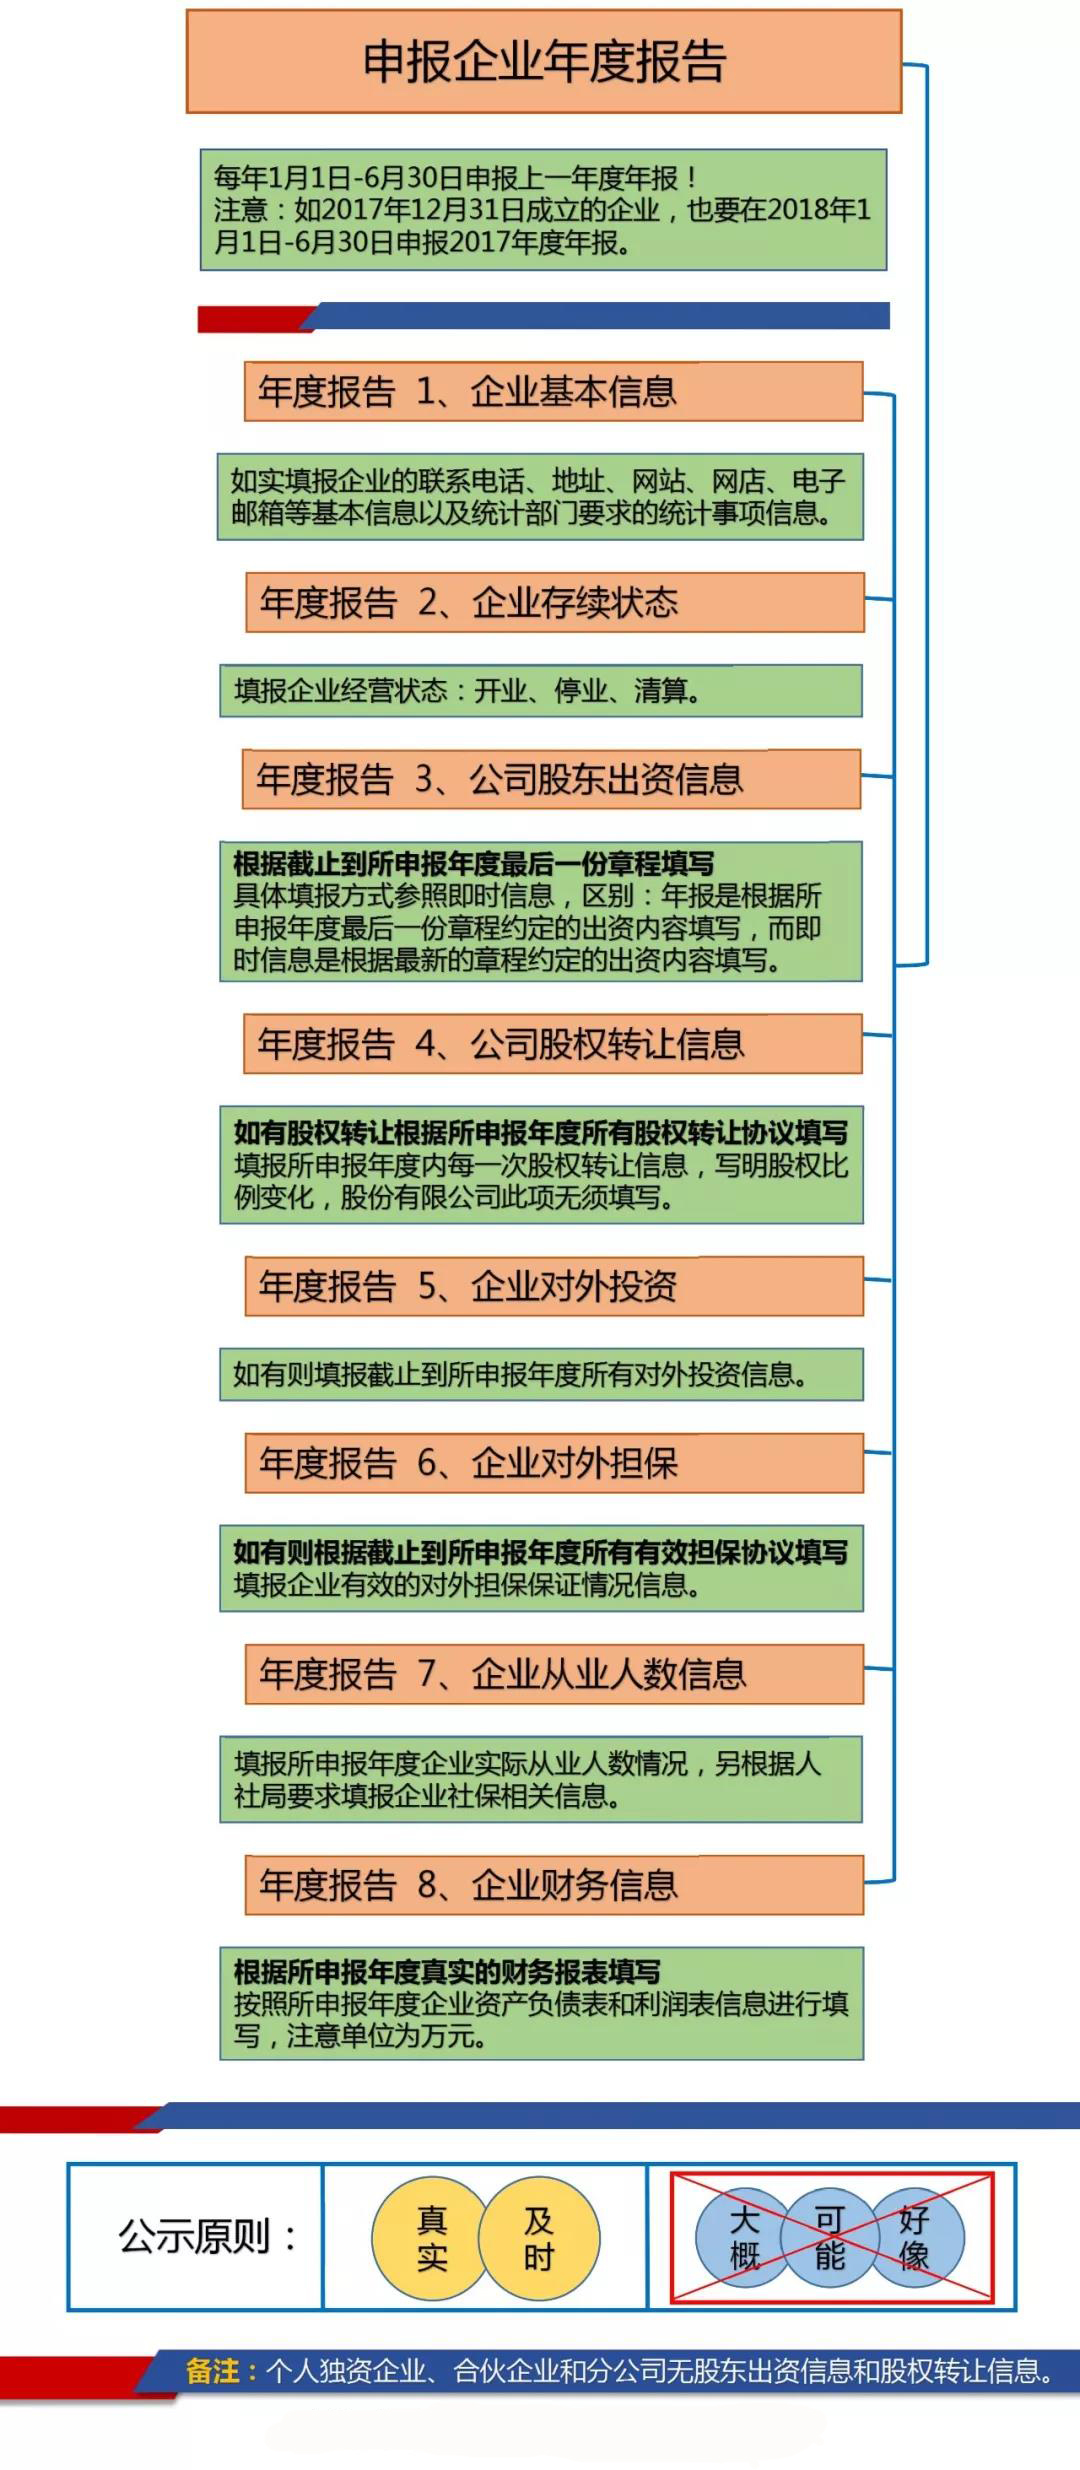 2020年宁波工商年报年度报告申请步骤【图文】